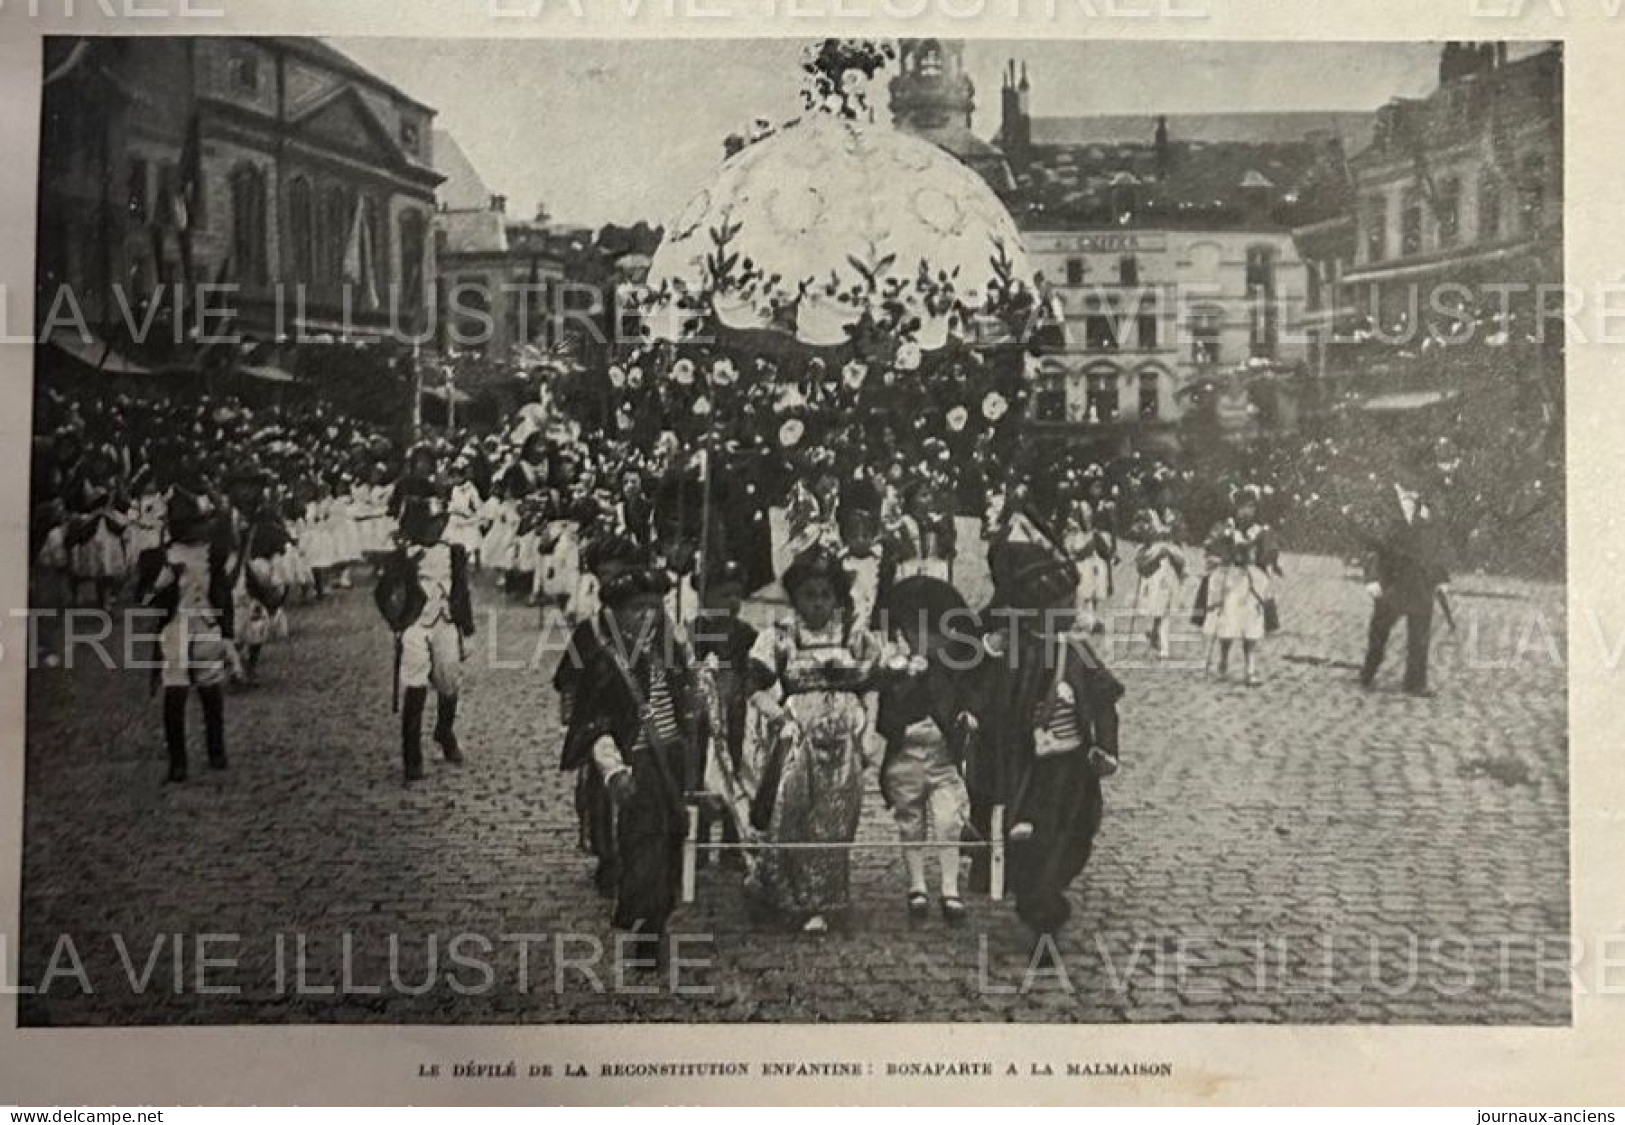 1905 BELGIQUE - MONS  - LES FETES DE L'INDEPENDANCE DE LA BELGIQUE - LA VIE ILLUSTRÉE - 1900 - 1949